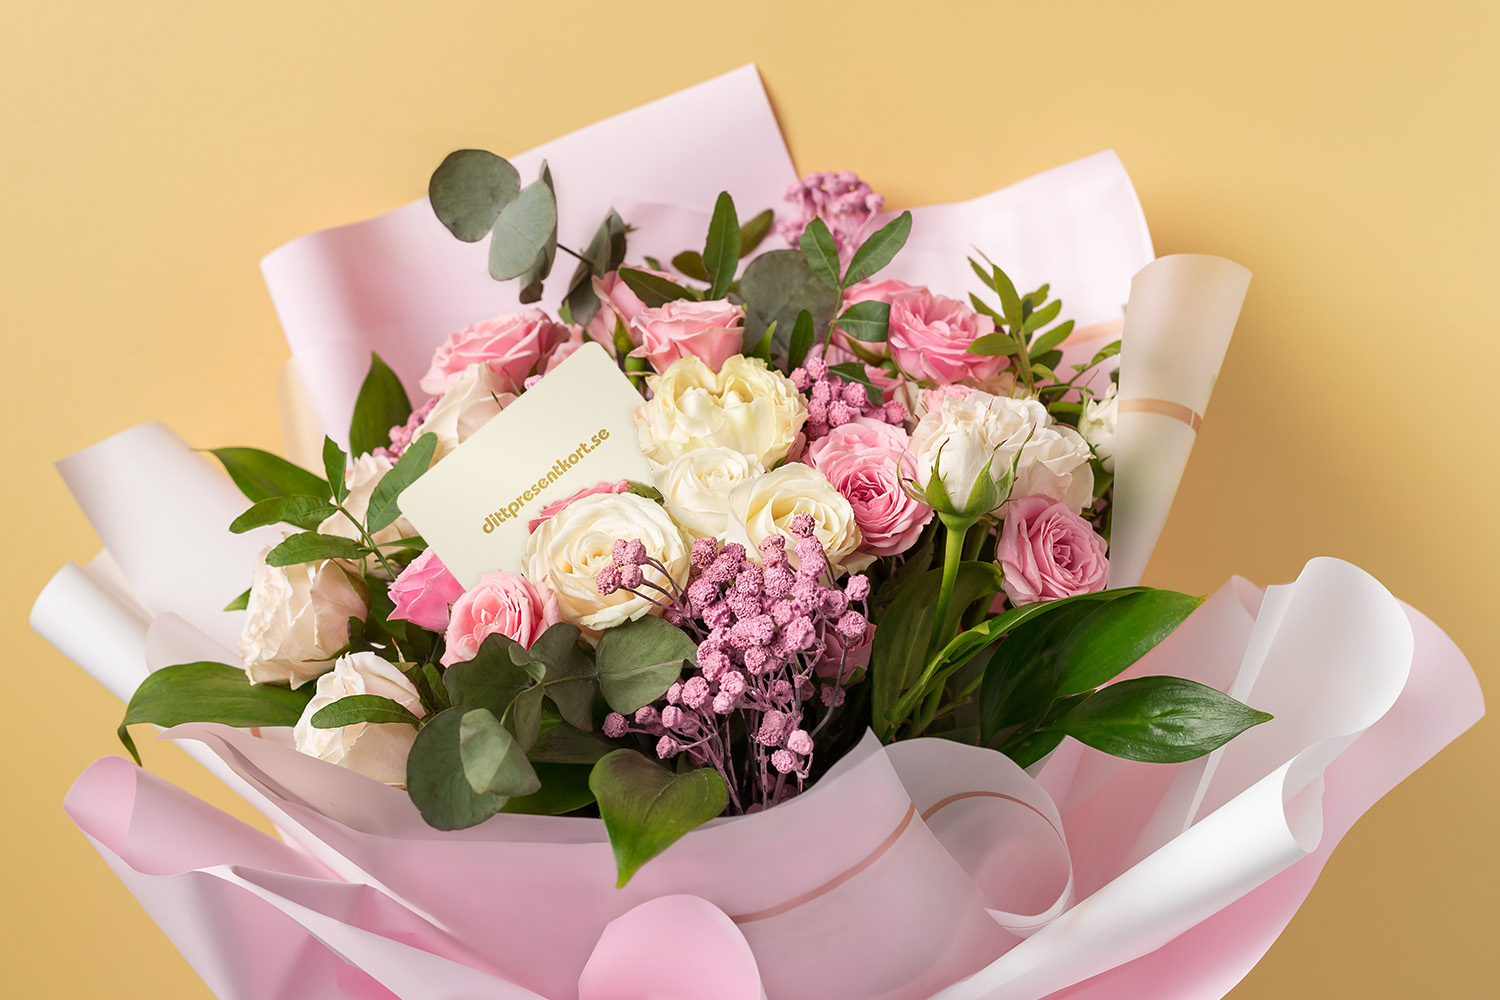 Blombukett med rosor och presentkort från dittpresentkort